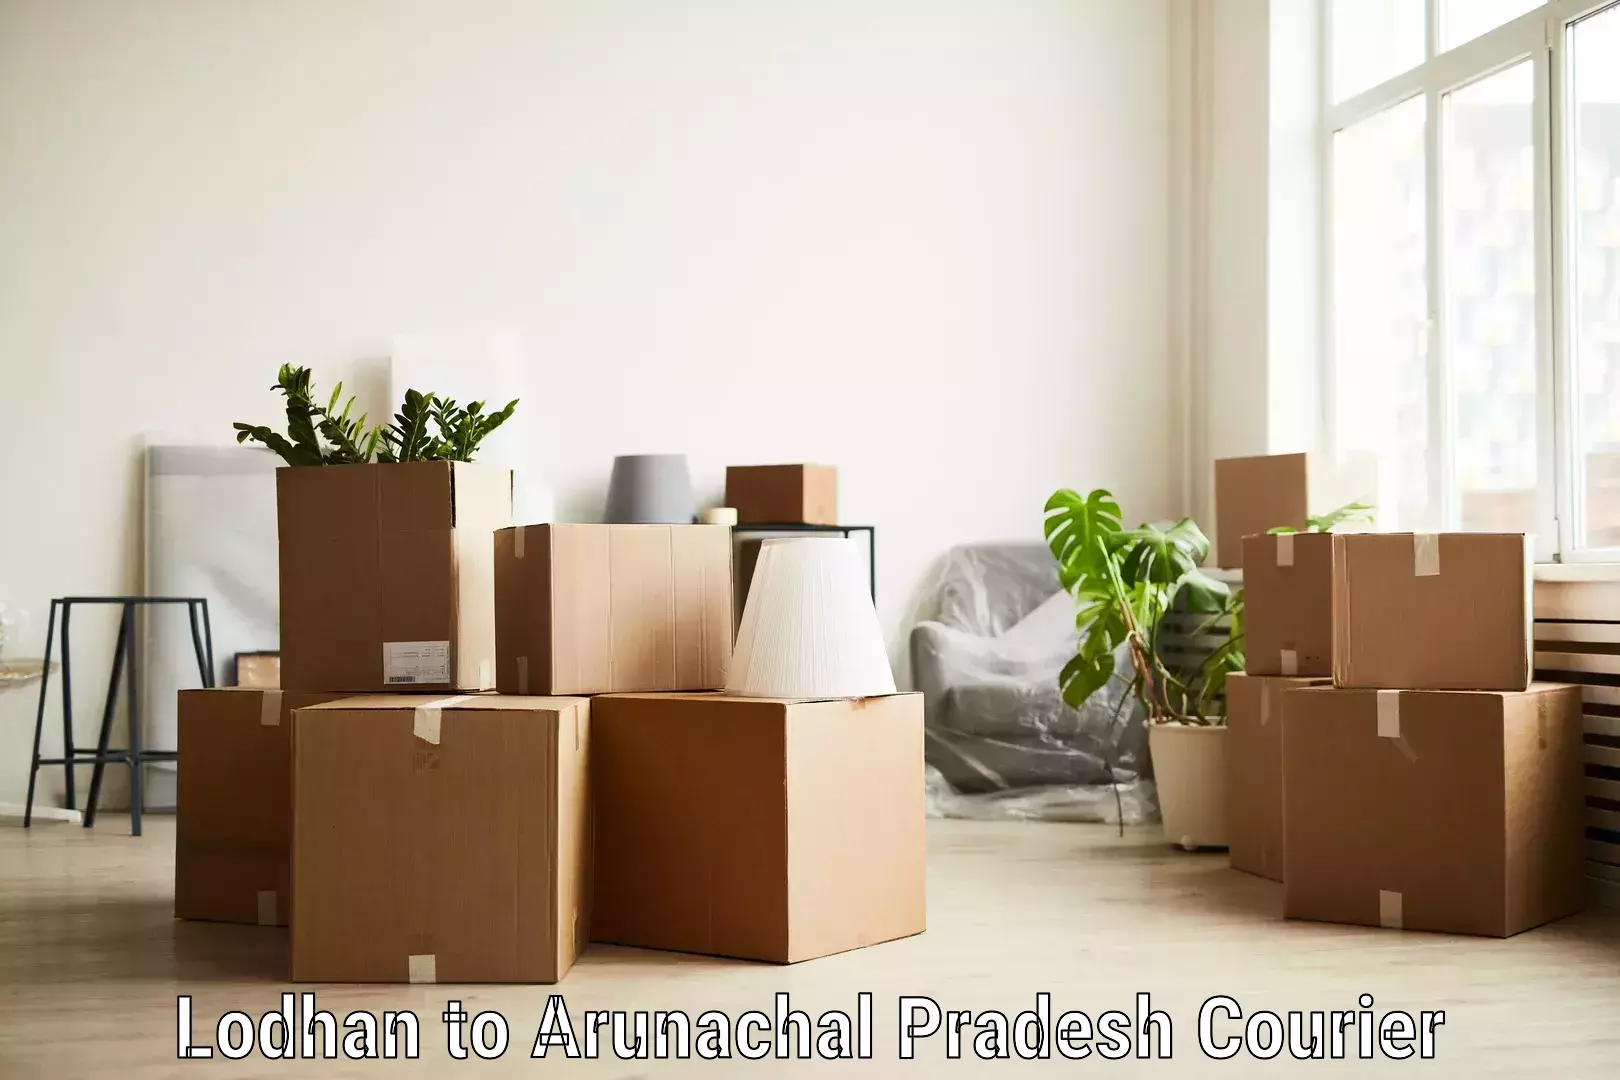 Package tracking Lodhan to Arunachal Pradesh